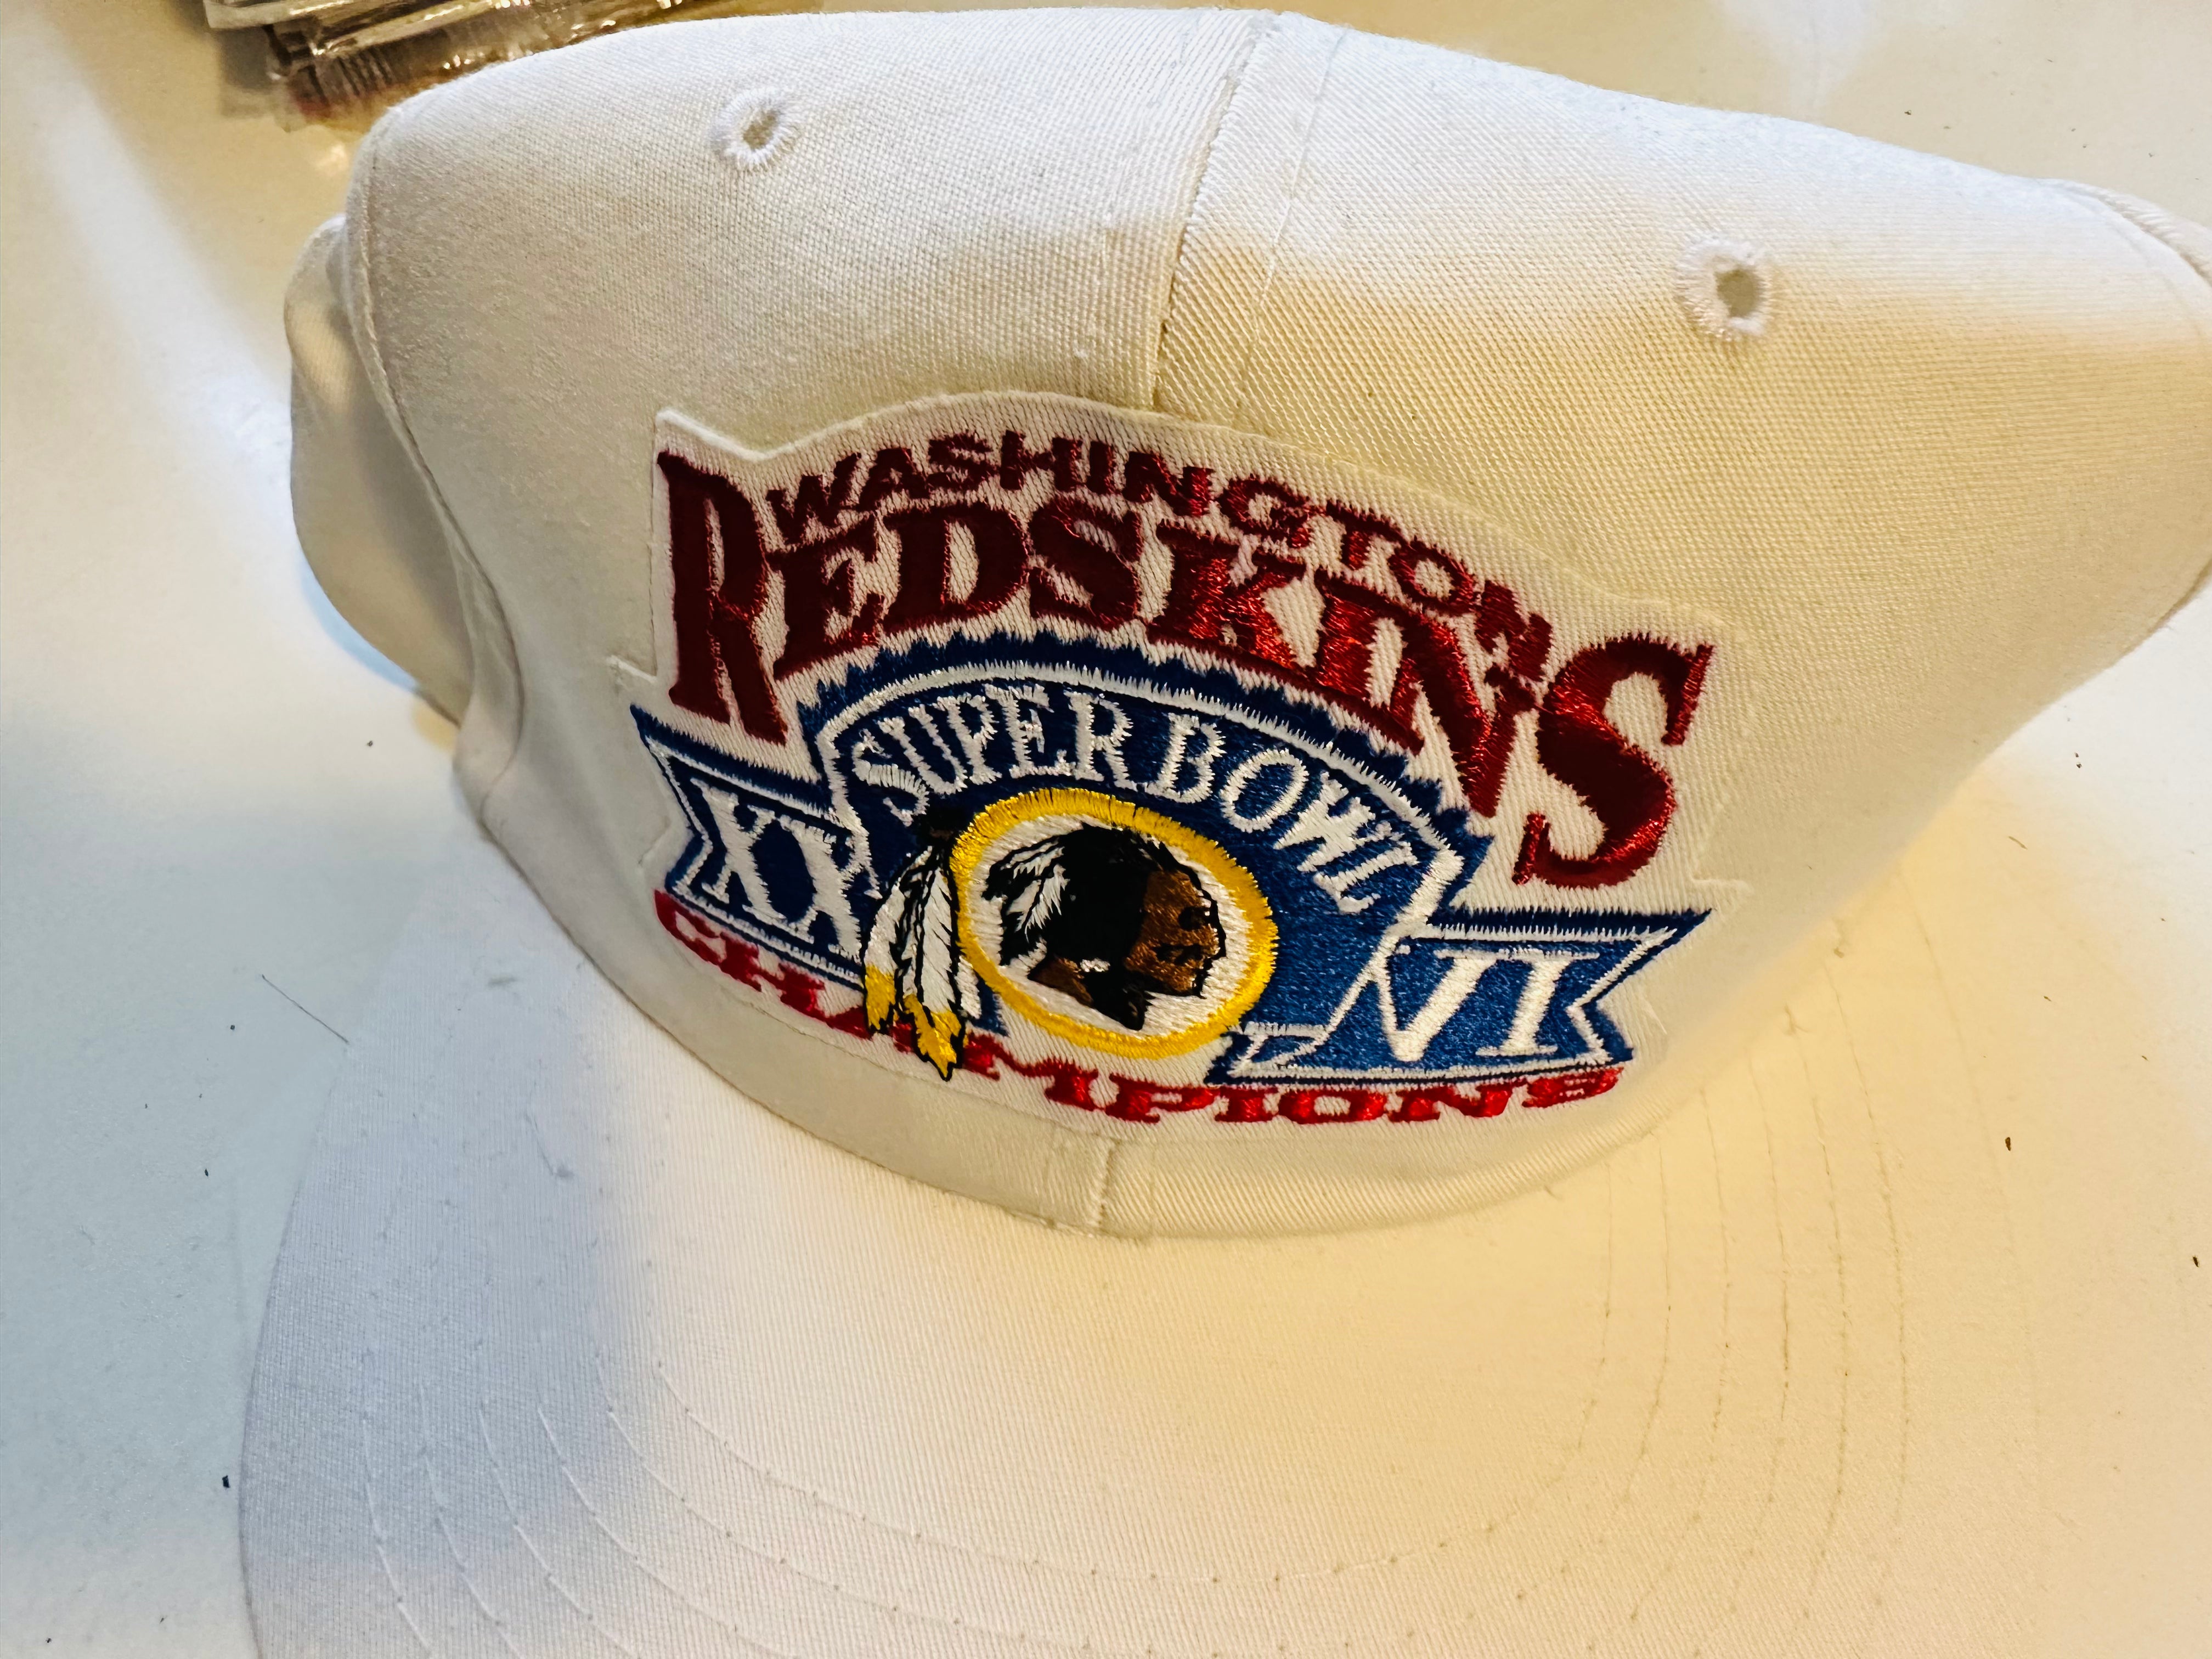 Washington Redskins Super Bowl winning hat